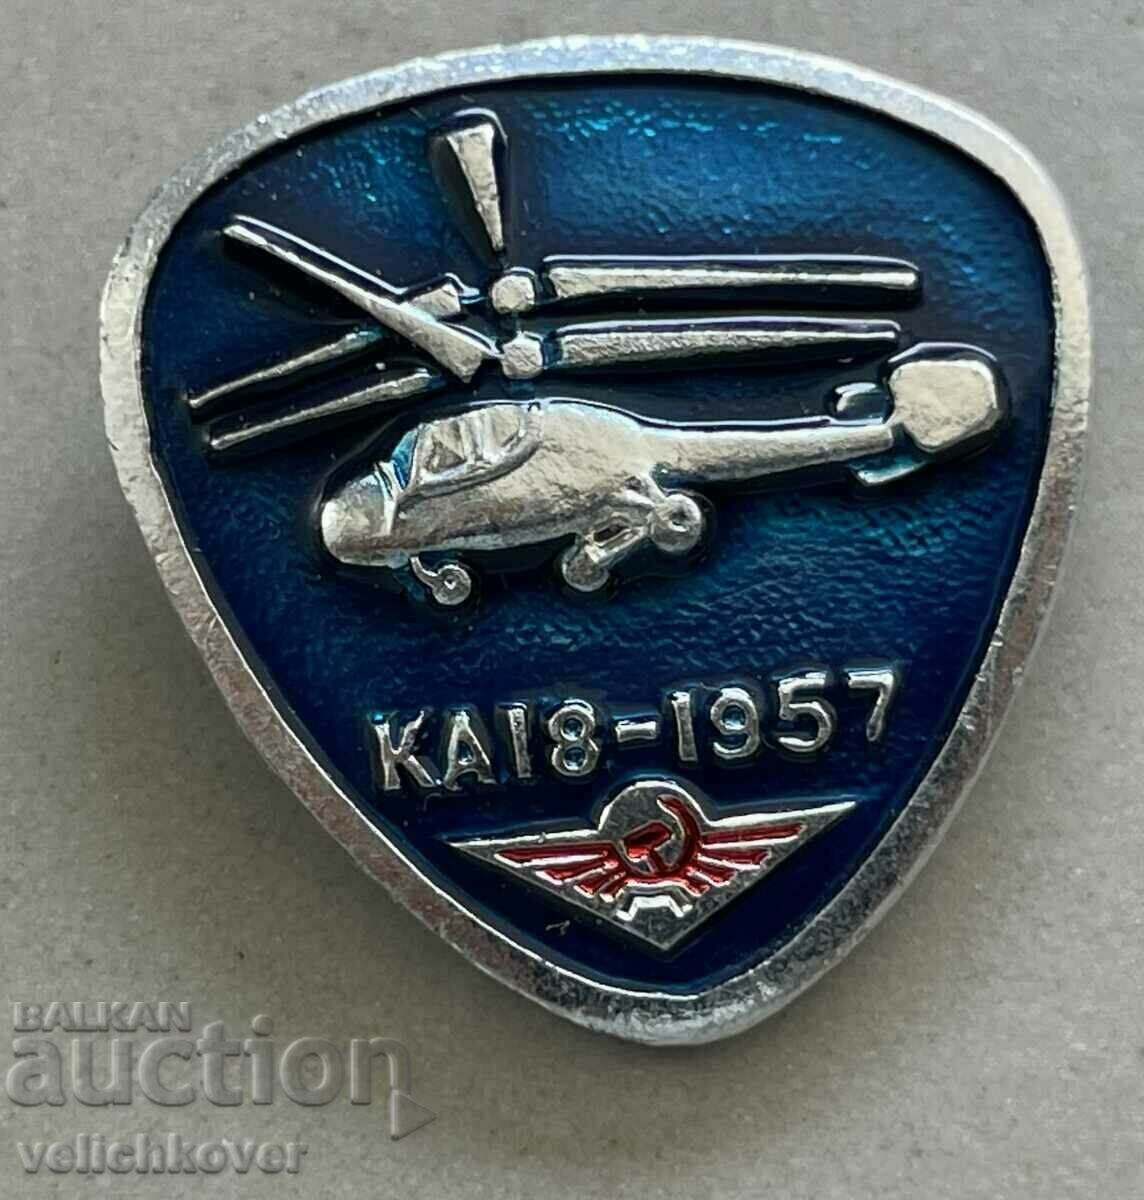 35369 însemnele URSS elicopter model KA 18 1957.